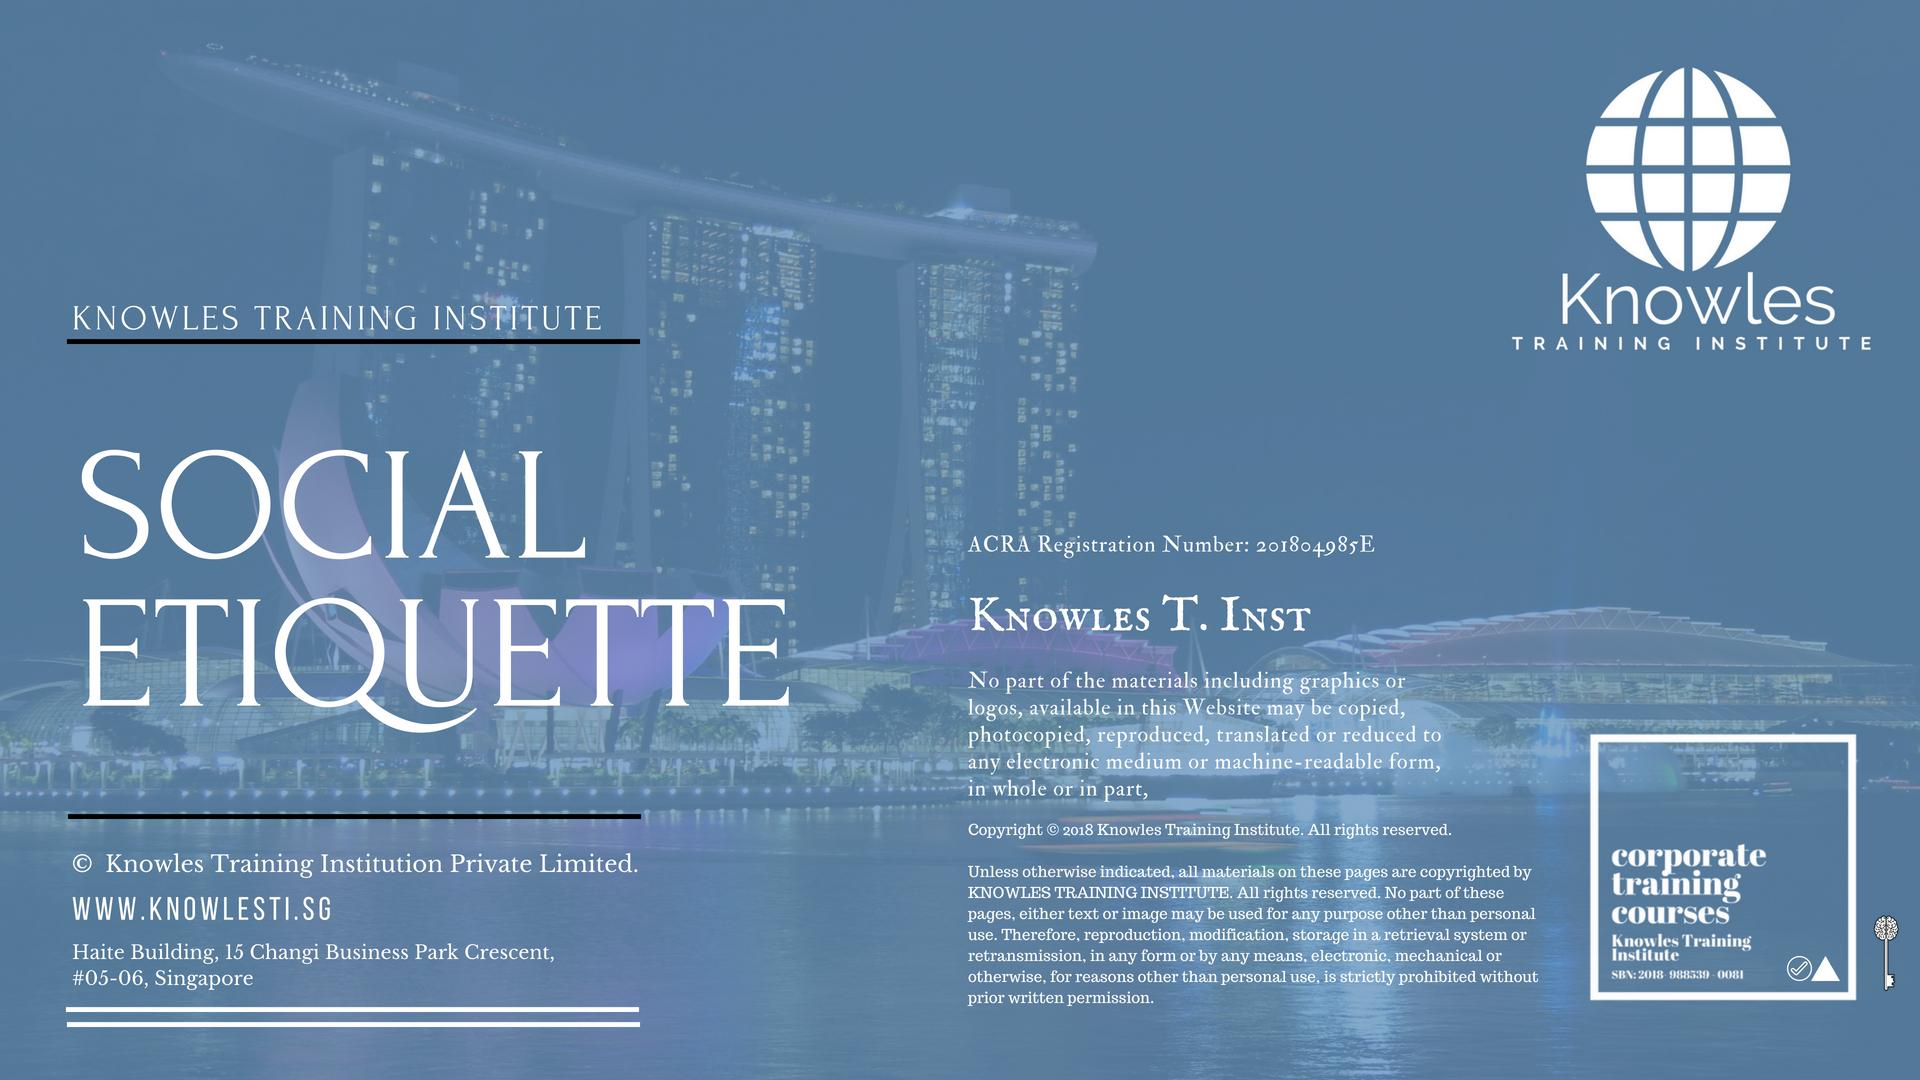 Social Etiquette Course In Singapore